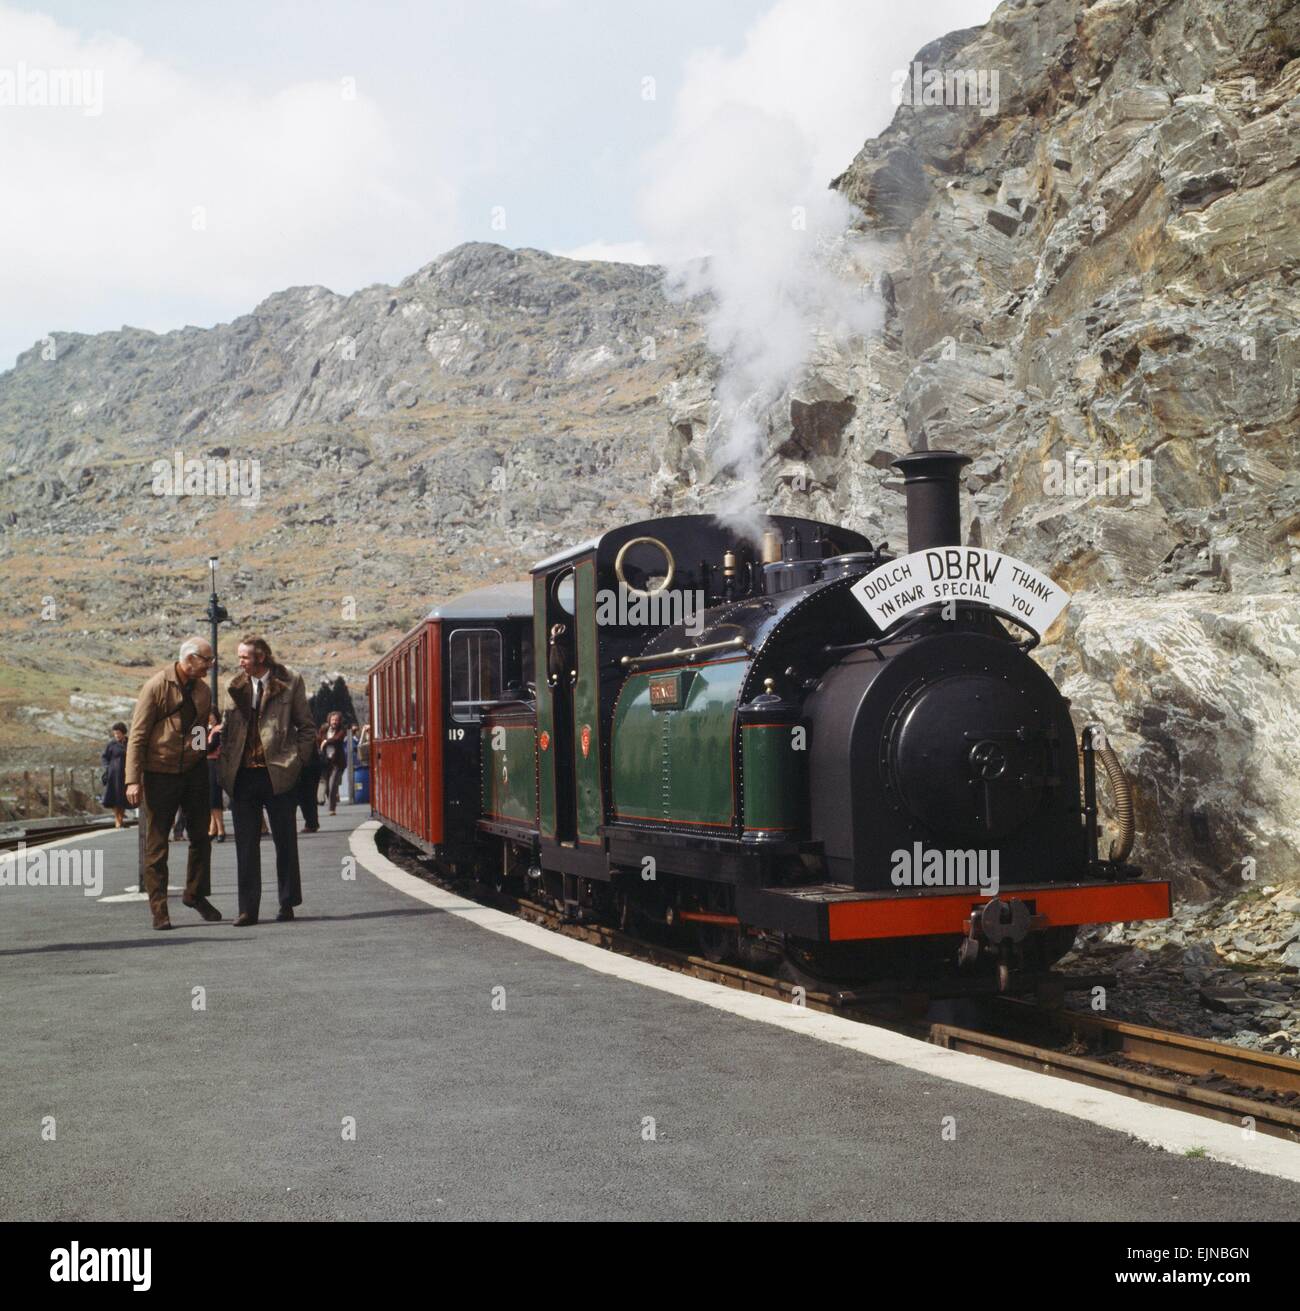 Le chemin de fer Ffestiniog est la plus ancienne compagnie de chemin de fer dans le monde - être fondée par une loi du Parlement en 1832. Le chemin de fer a été construite à l'origine tirés par des chevaux et la gravité pour le transport de ligne des carrières d'ardoise dans les montagnes autour de Blaenau Ffestiniog à la ville de Porthmadog. Locomotives à vapeur pour la première fois sur la ligne en octobre 1863 Le chemin de fer a été un très grand succès et a présenté de nombreuses solutions d'ingénierie innovantes pour faire face à l'augmentation rapide de la production des carrières et du nombre de passagers qu'il a effectué. Ingénieurs du monde entier sont venus à l'étude e Banque D'Images